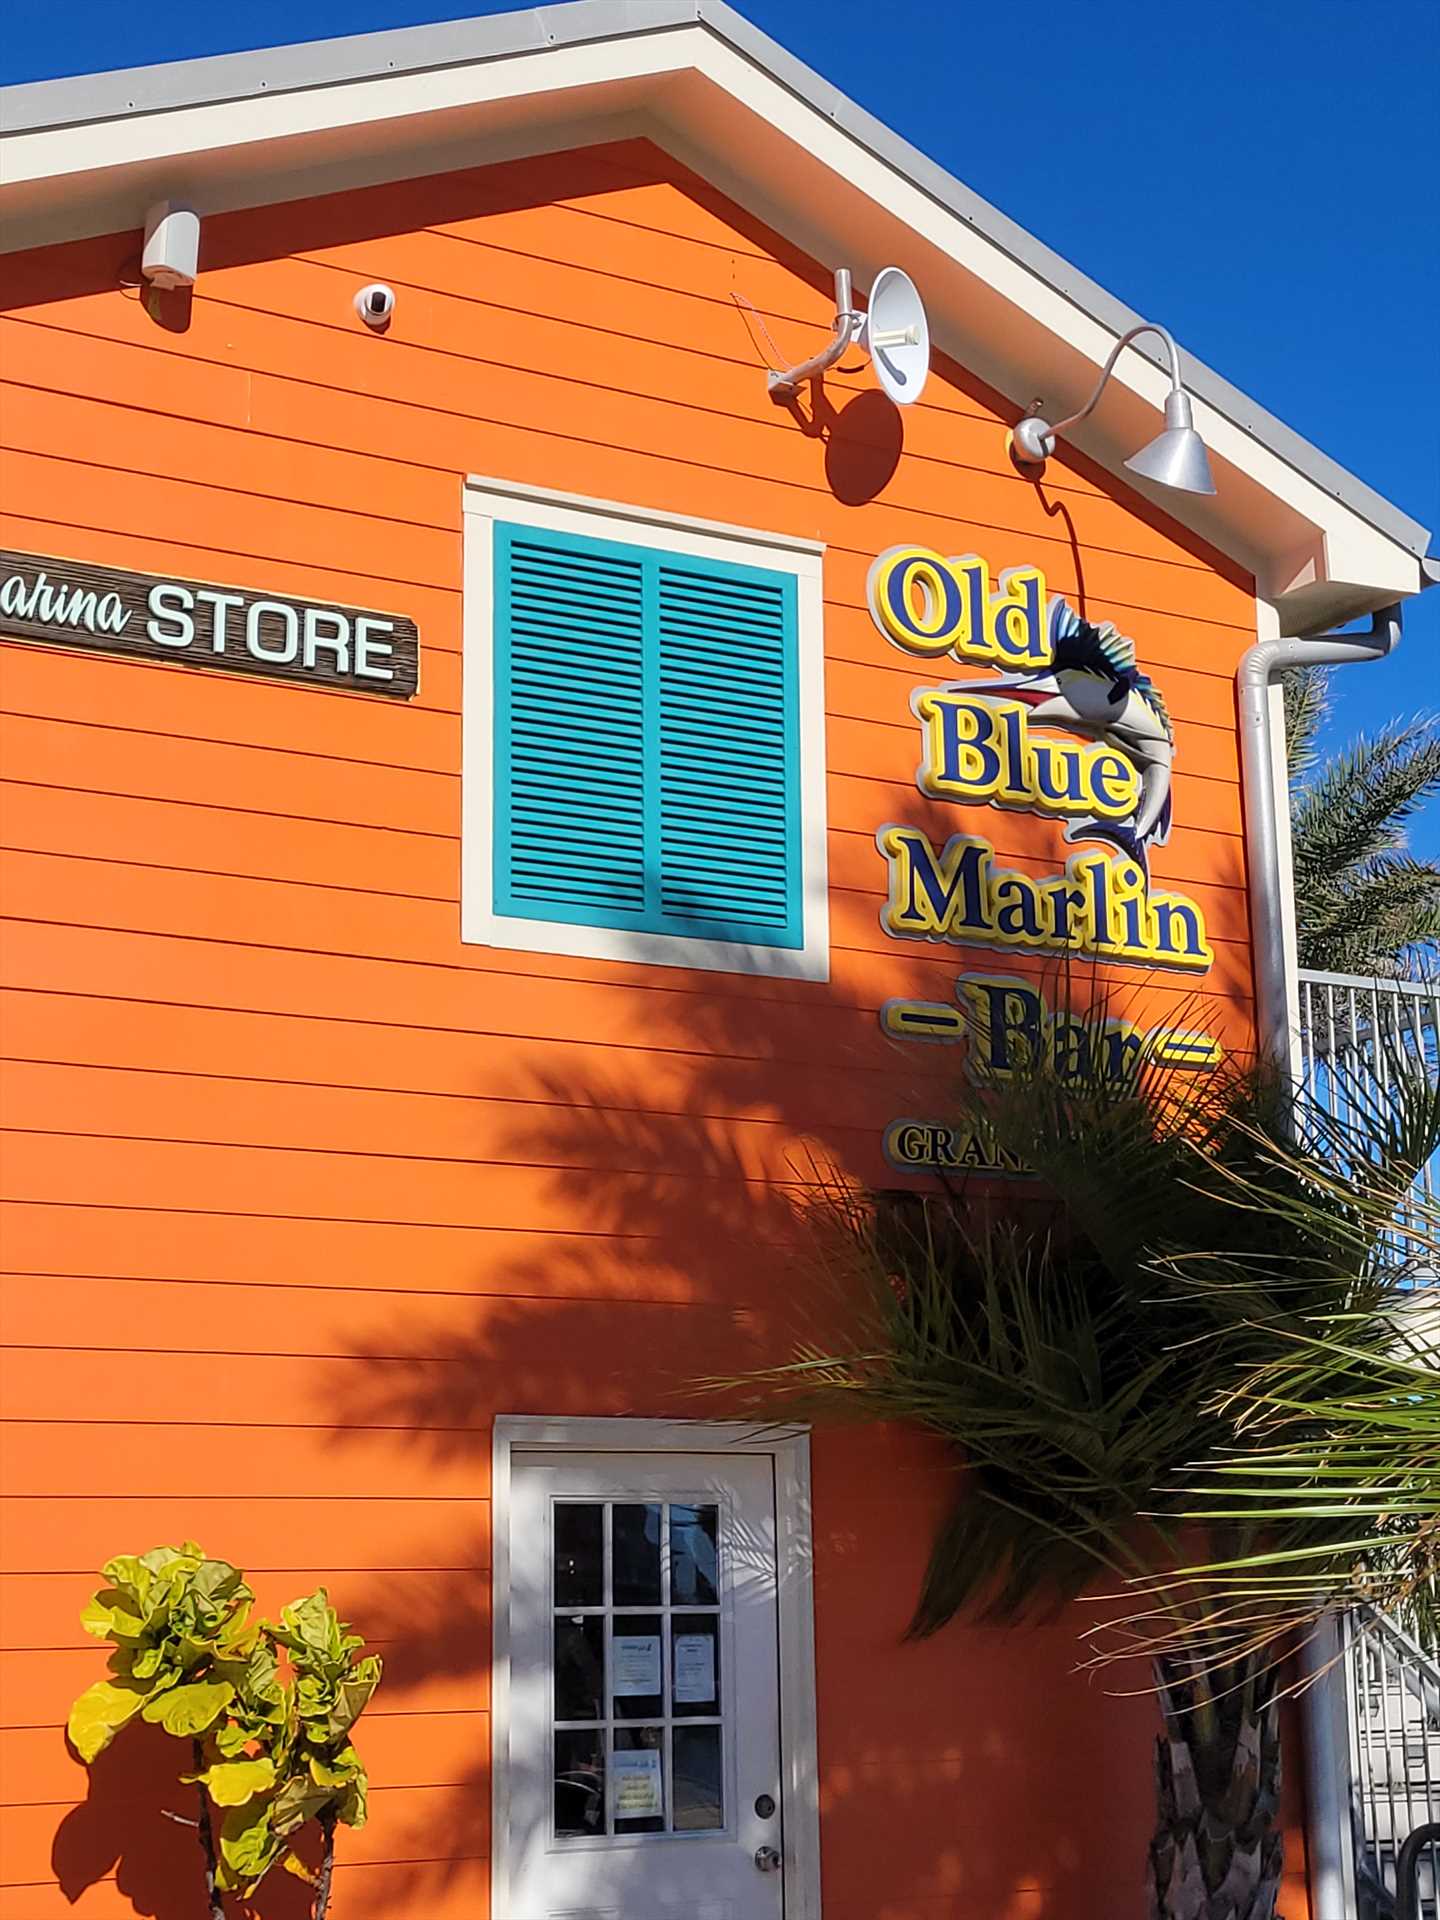 Old Blue Marlin Bar upstairs